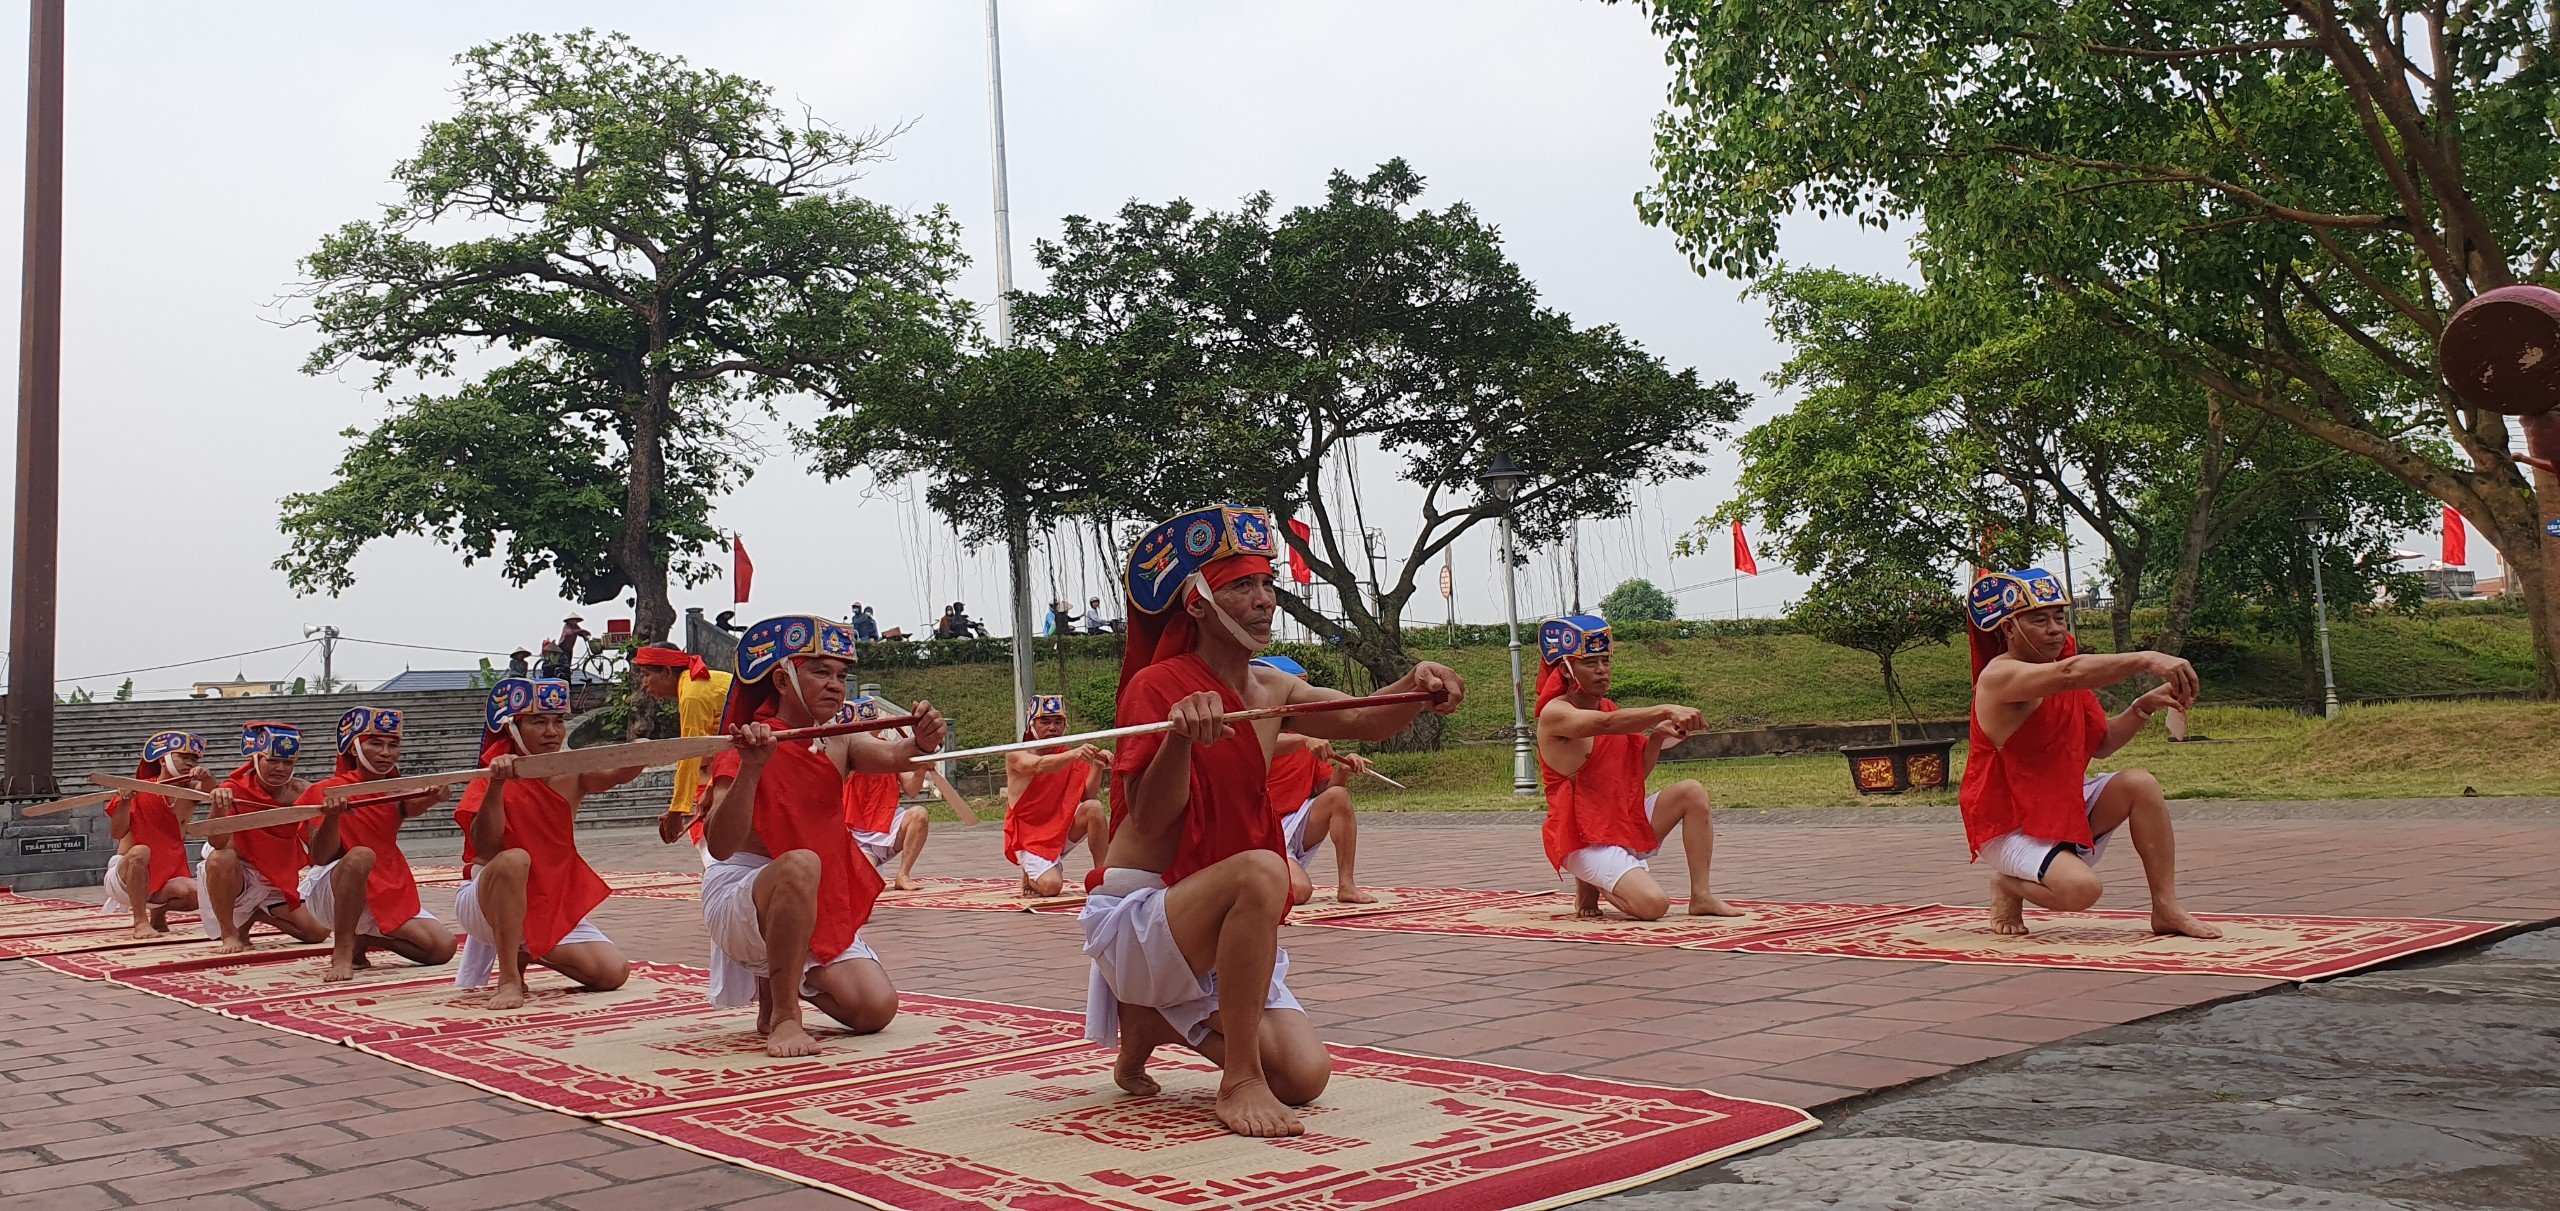 Thái Bình: Nhiều hoạt động đặc sắc tại Chùa Keo dịp lễ 30/4 - 1/5- Ảnh 4.